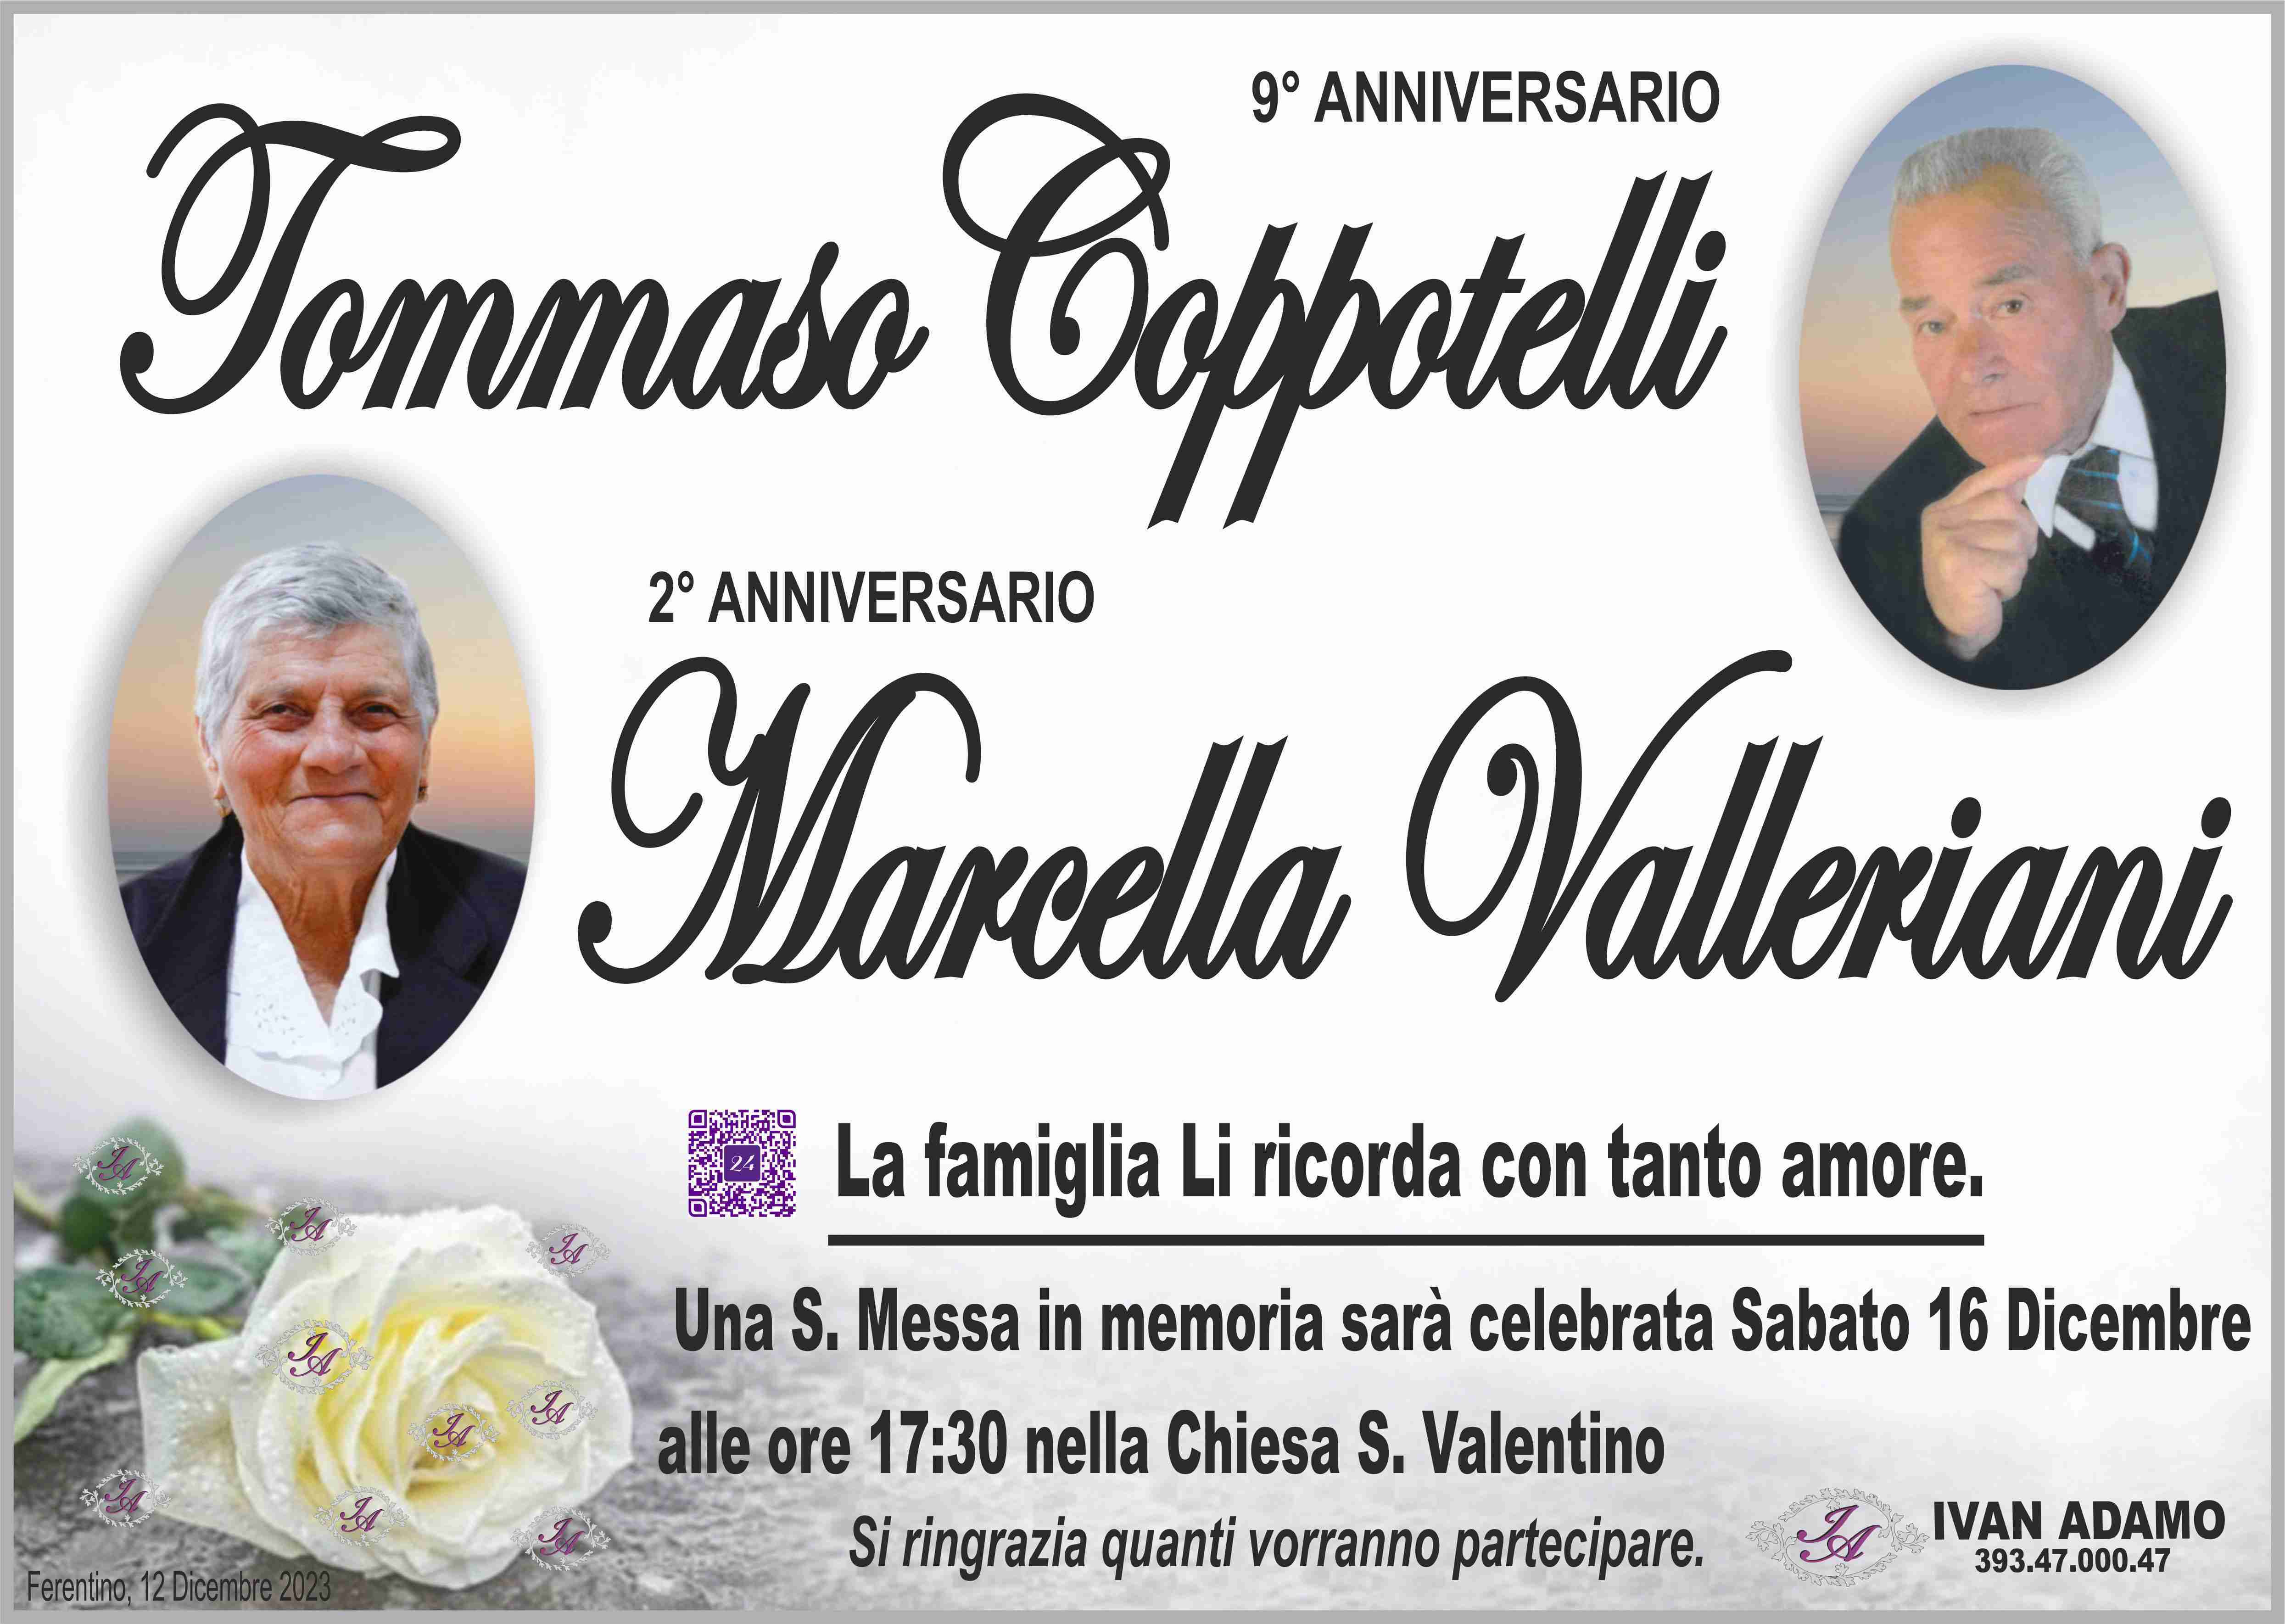 Tommaso Coppotelli e Marcella Valleriani